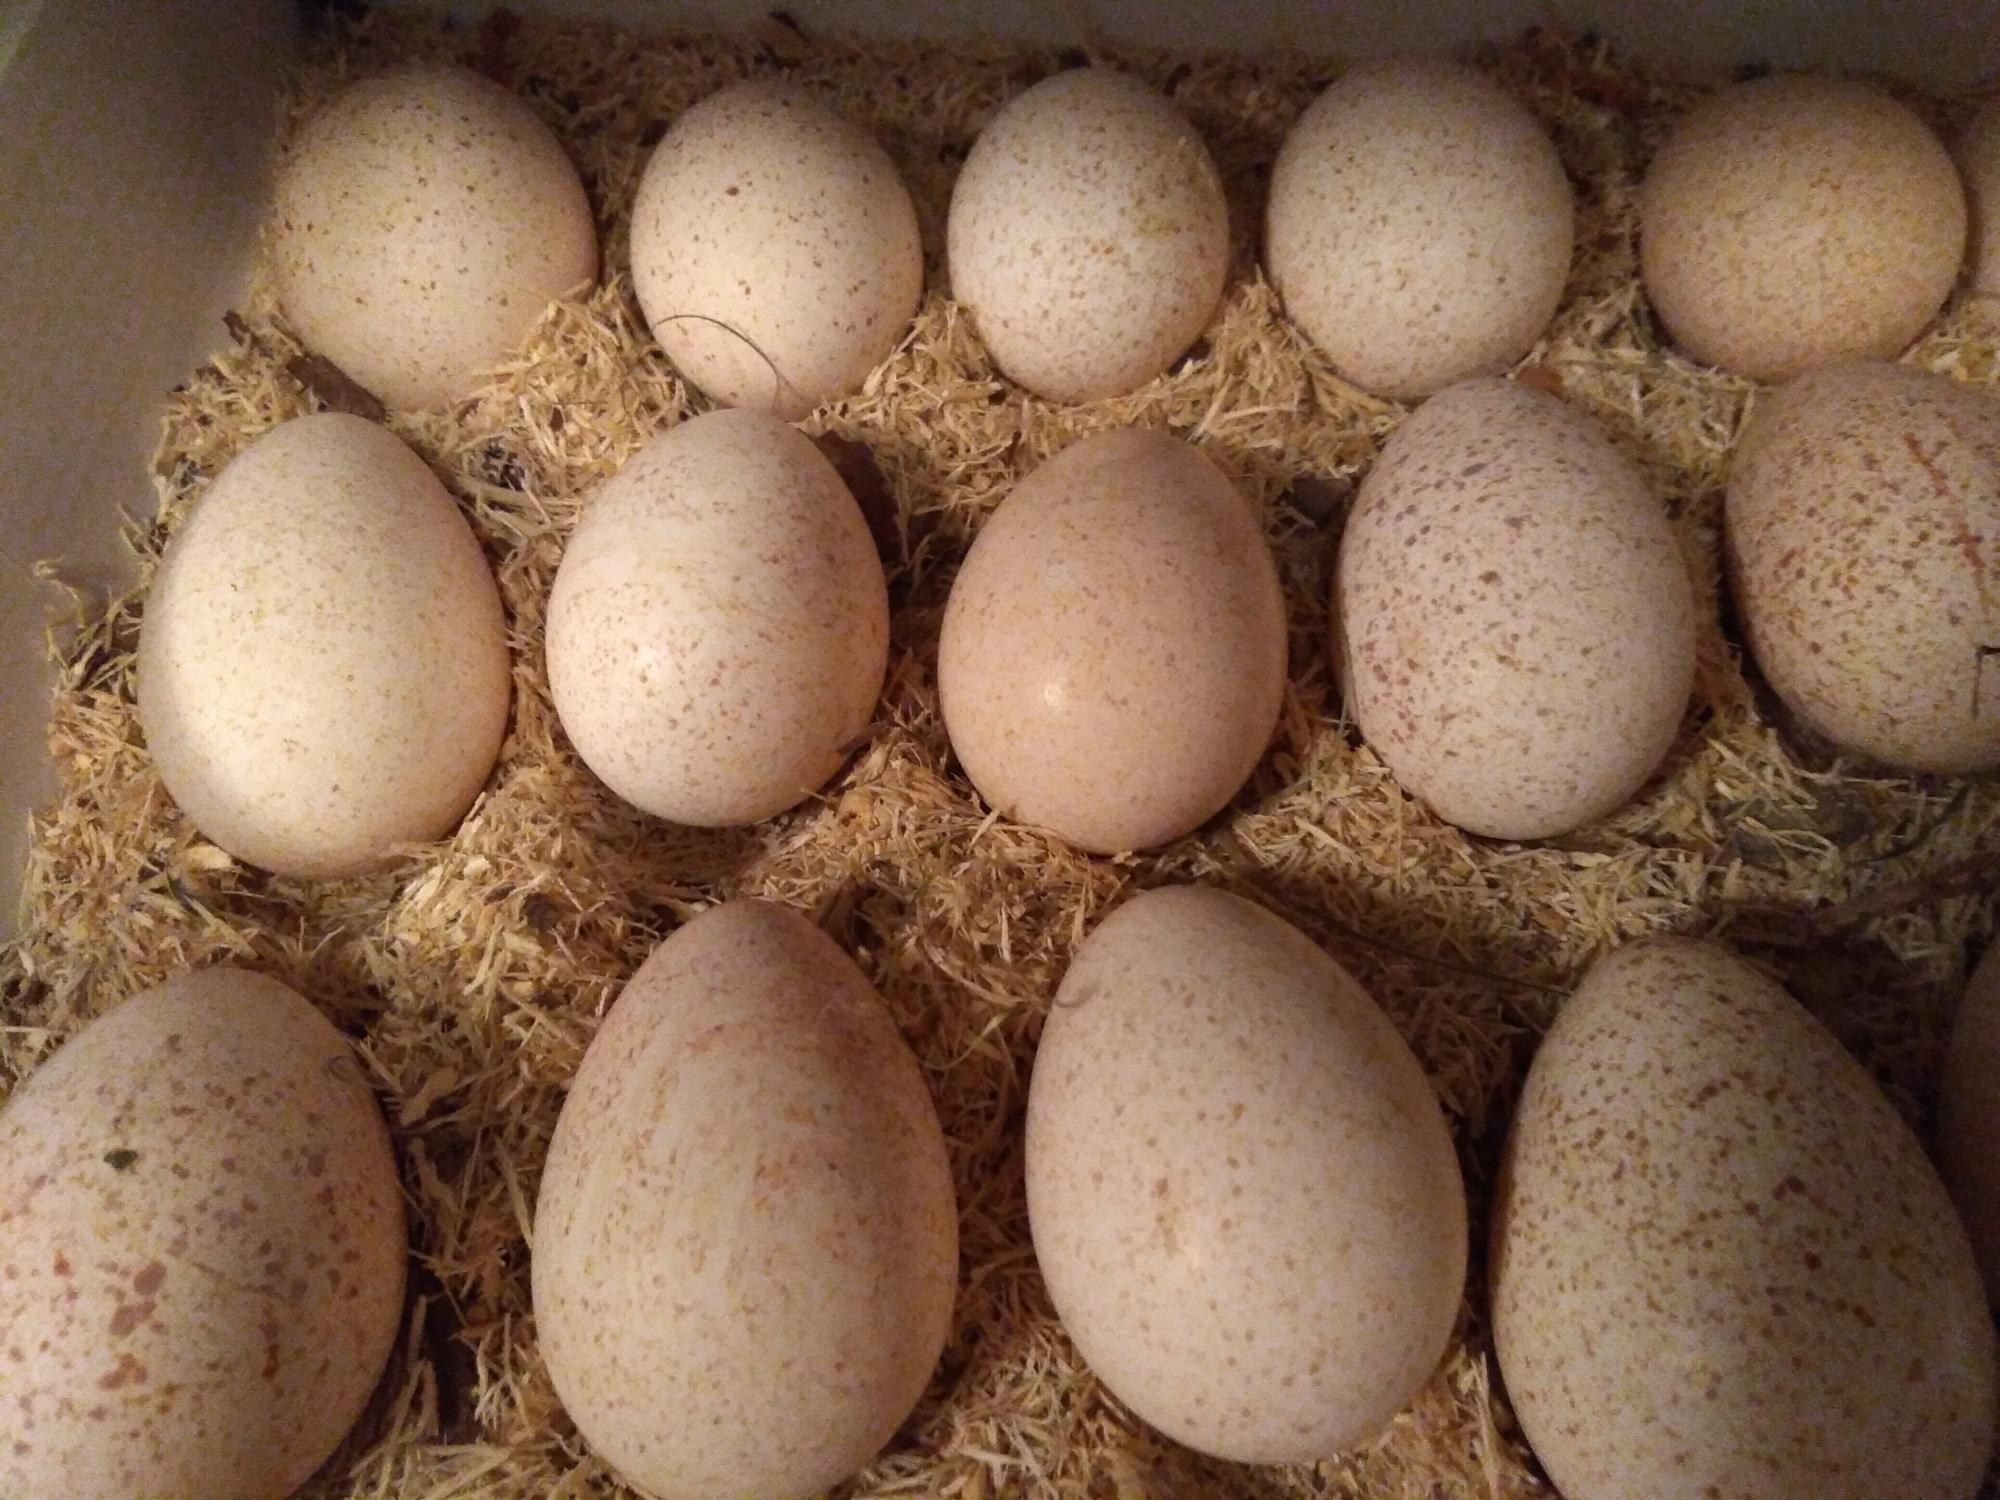 Купить яйцо в белгородской области. Яйцо инкубационное индюшиное. Яйцо инкубационное Индейкино. Яйца индюшатины инкубаторные.